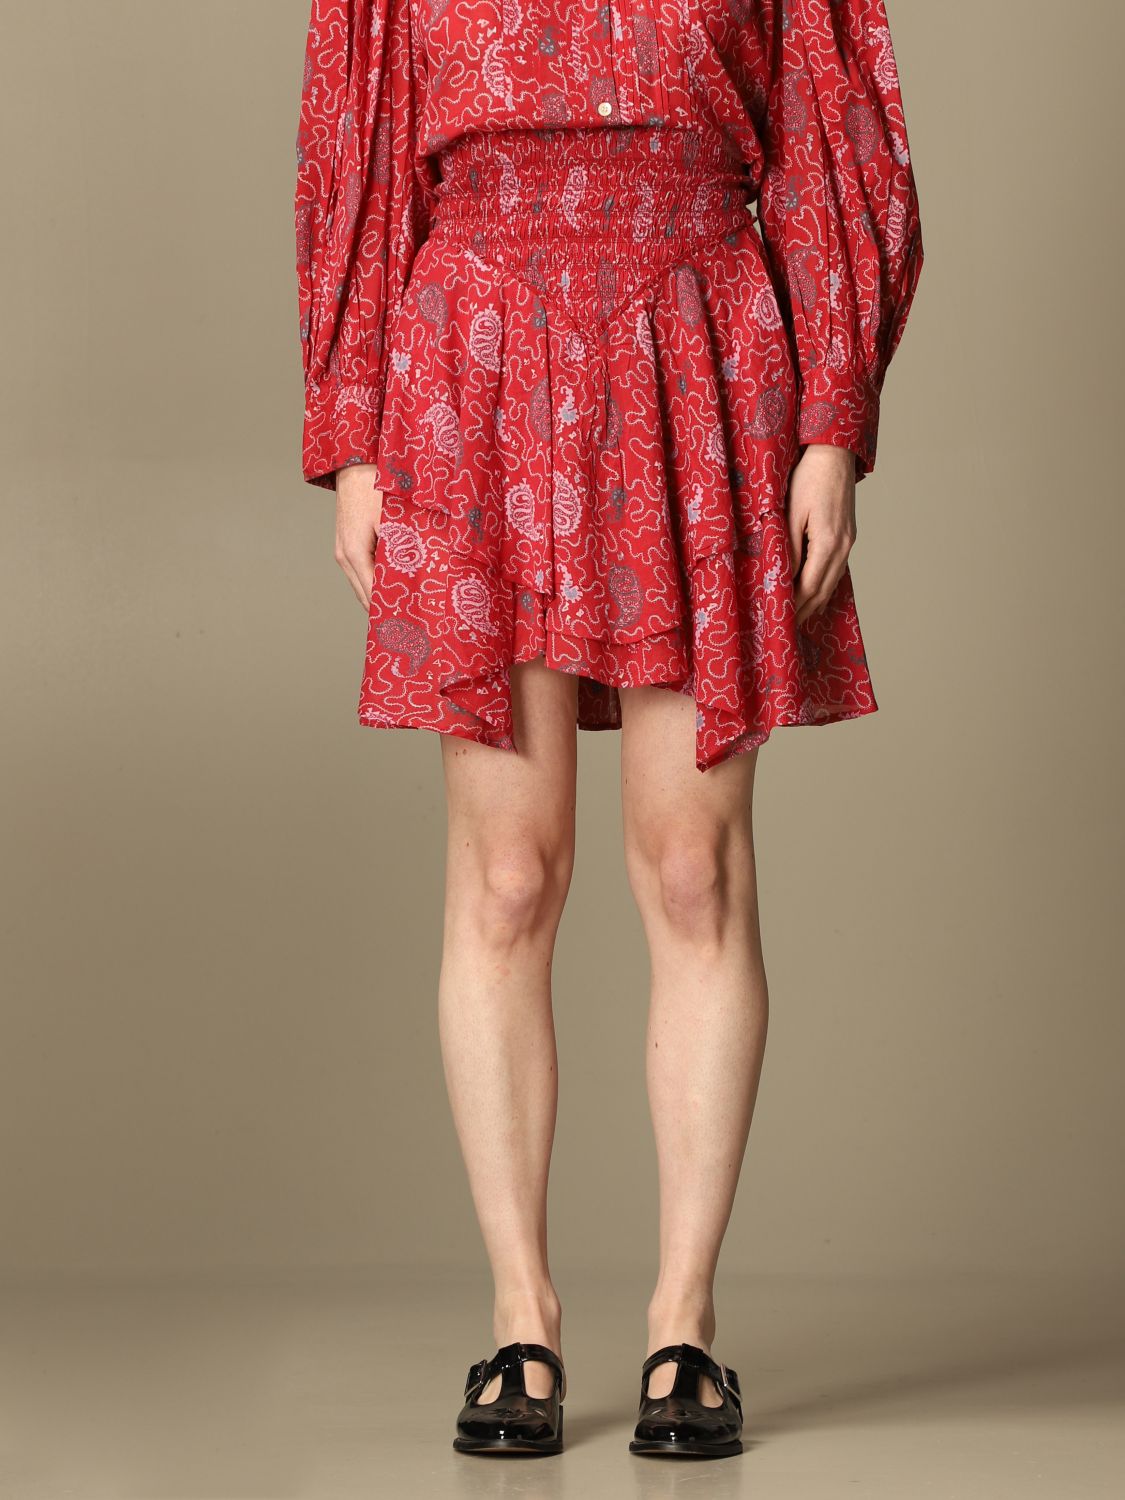 MARANT ETOILE: flounced skirt - Red | Isabel Marant Etoile skirt JU123921P031E online at GIGLIO.COM